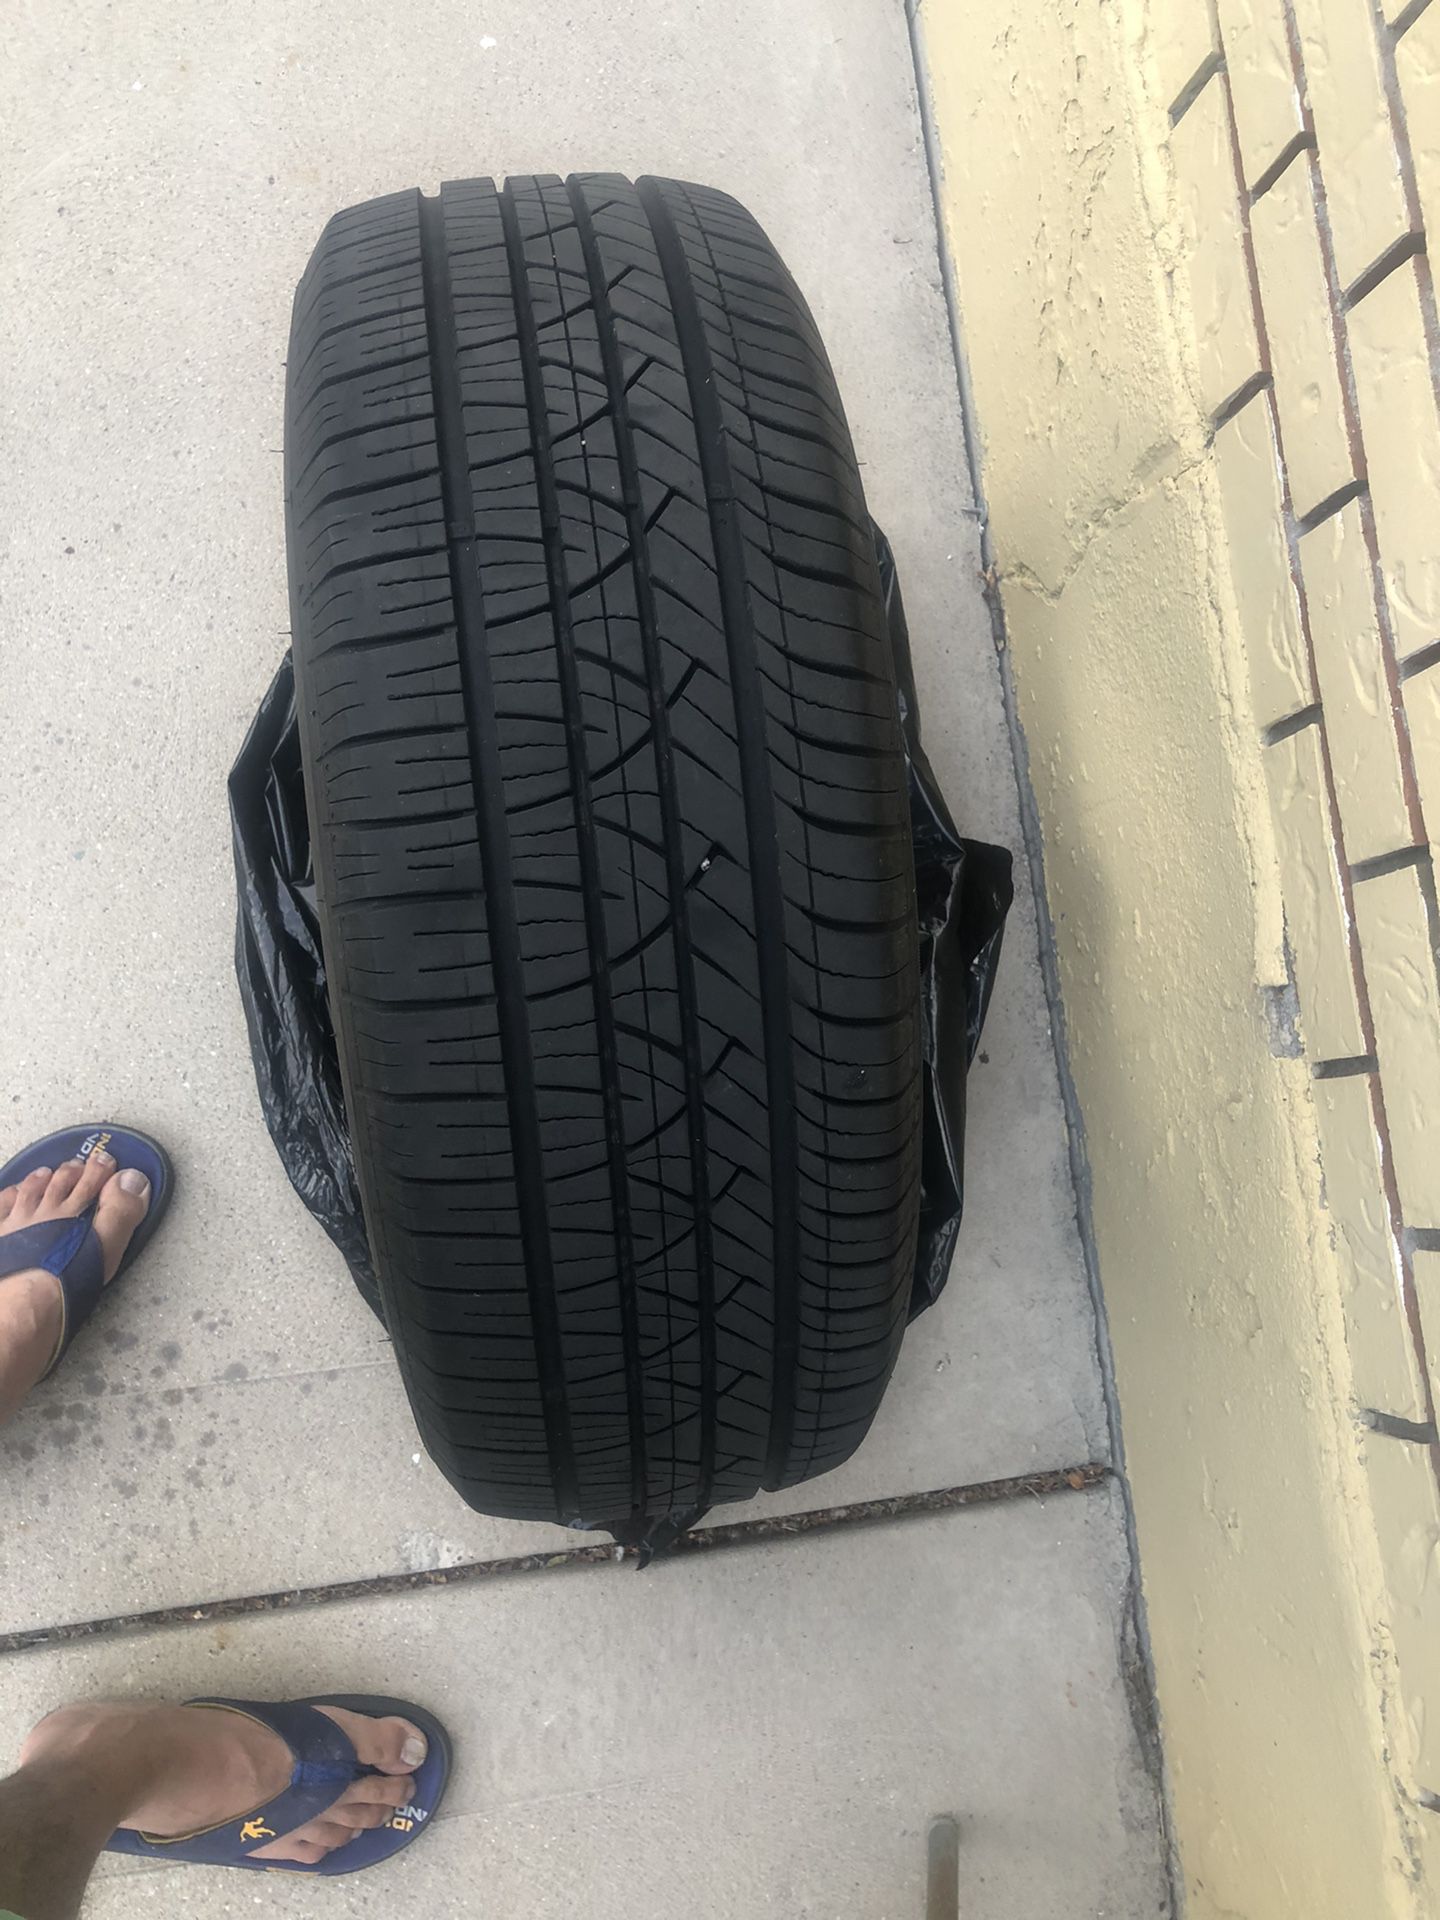 225/65/16 tire